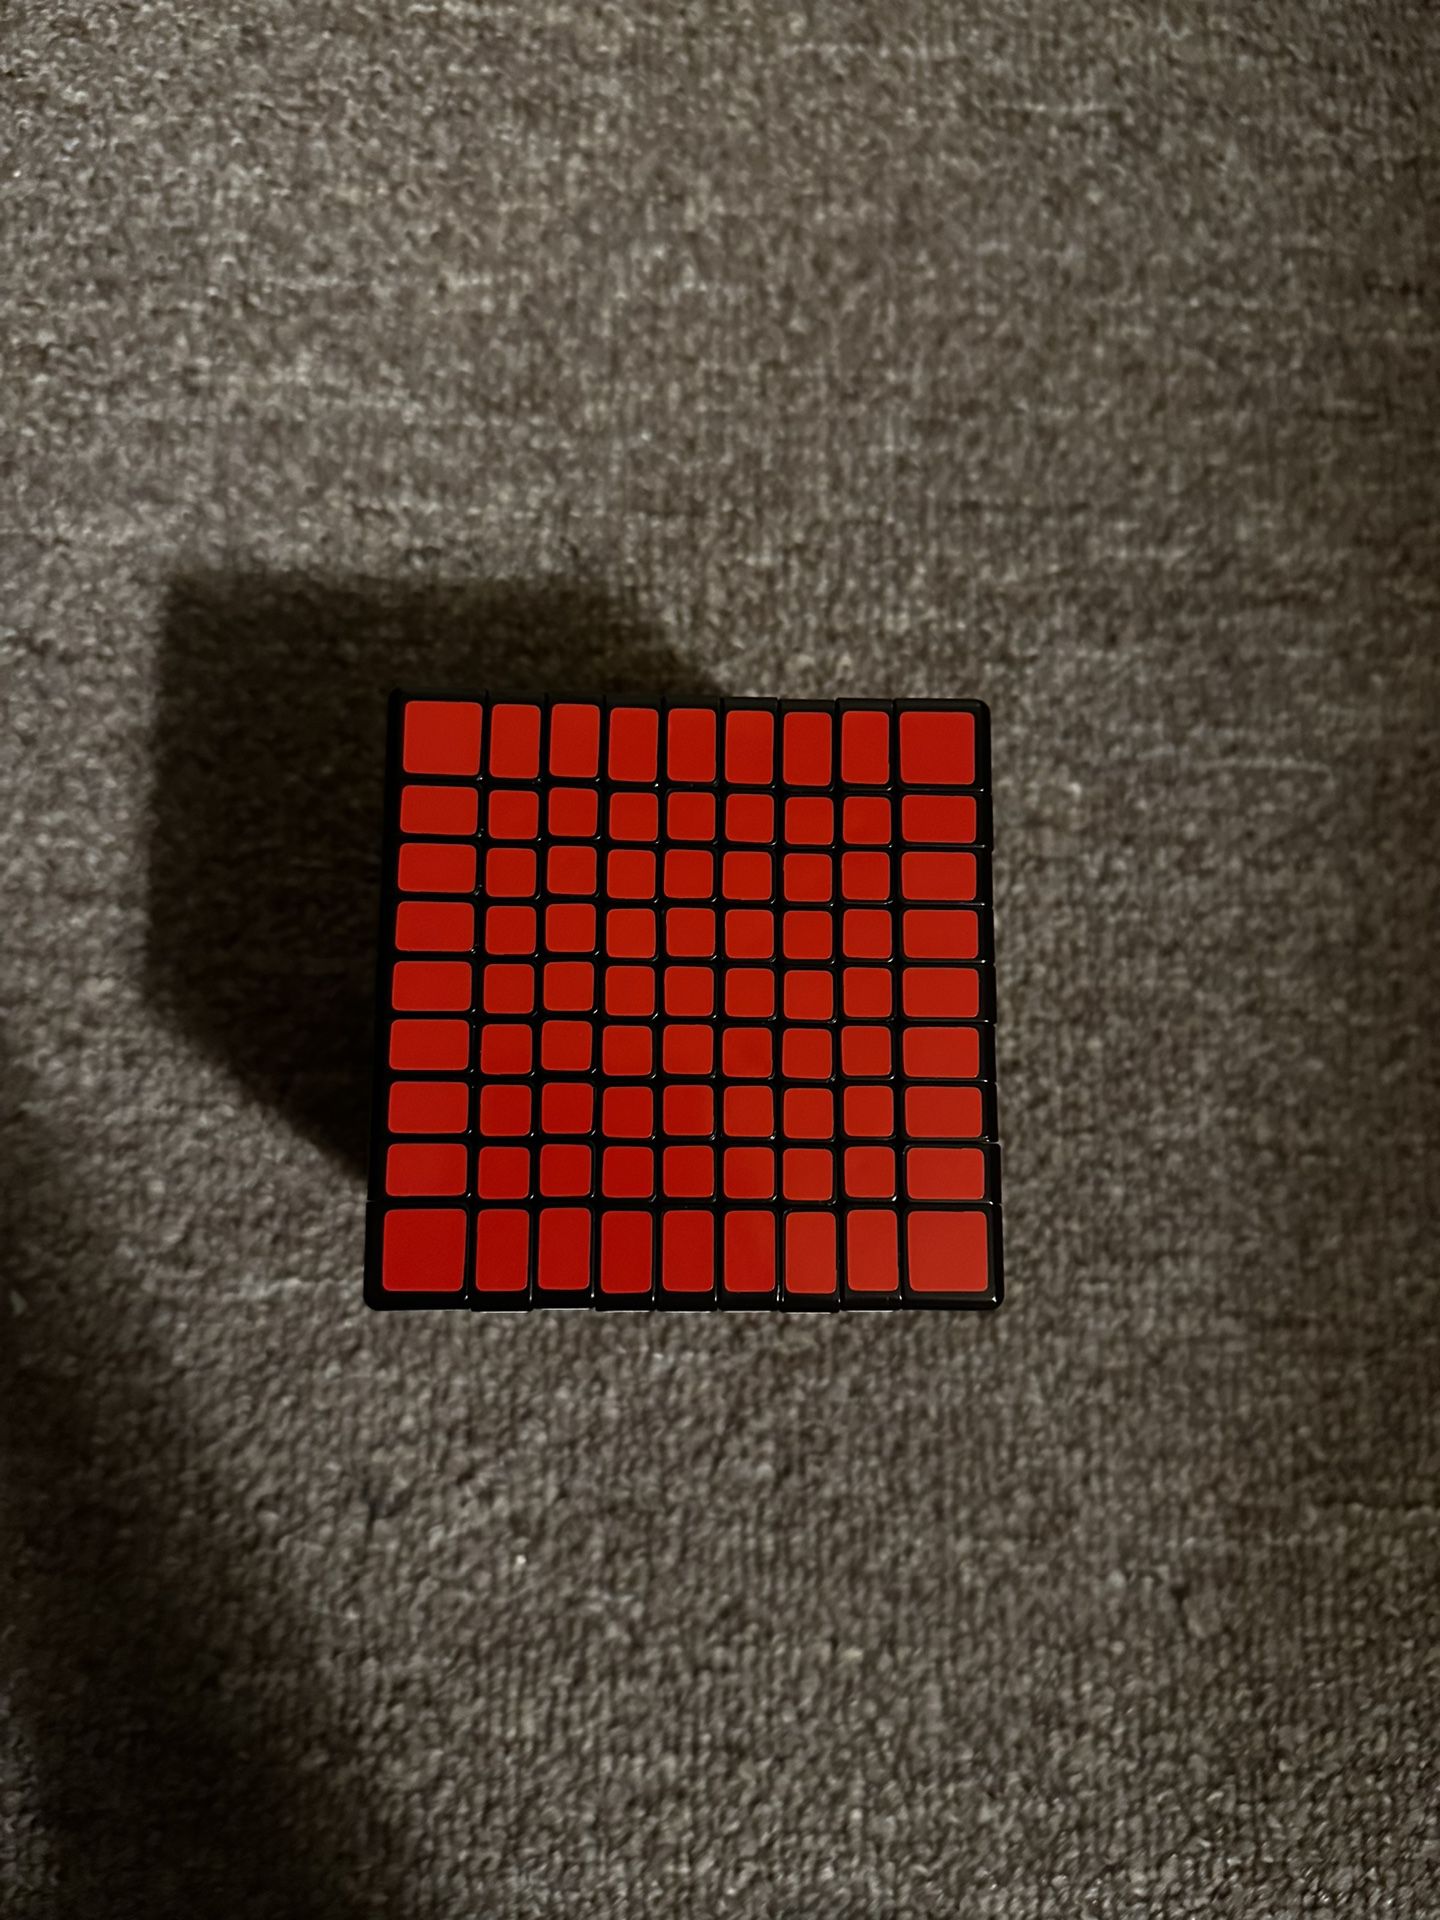 9x9 Shengshou Rubik’s cube 